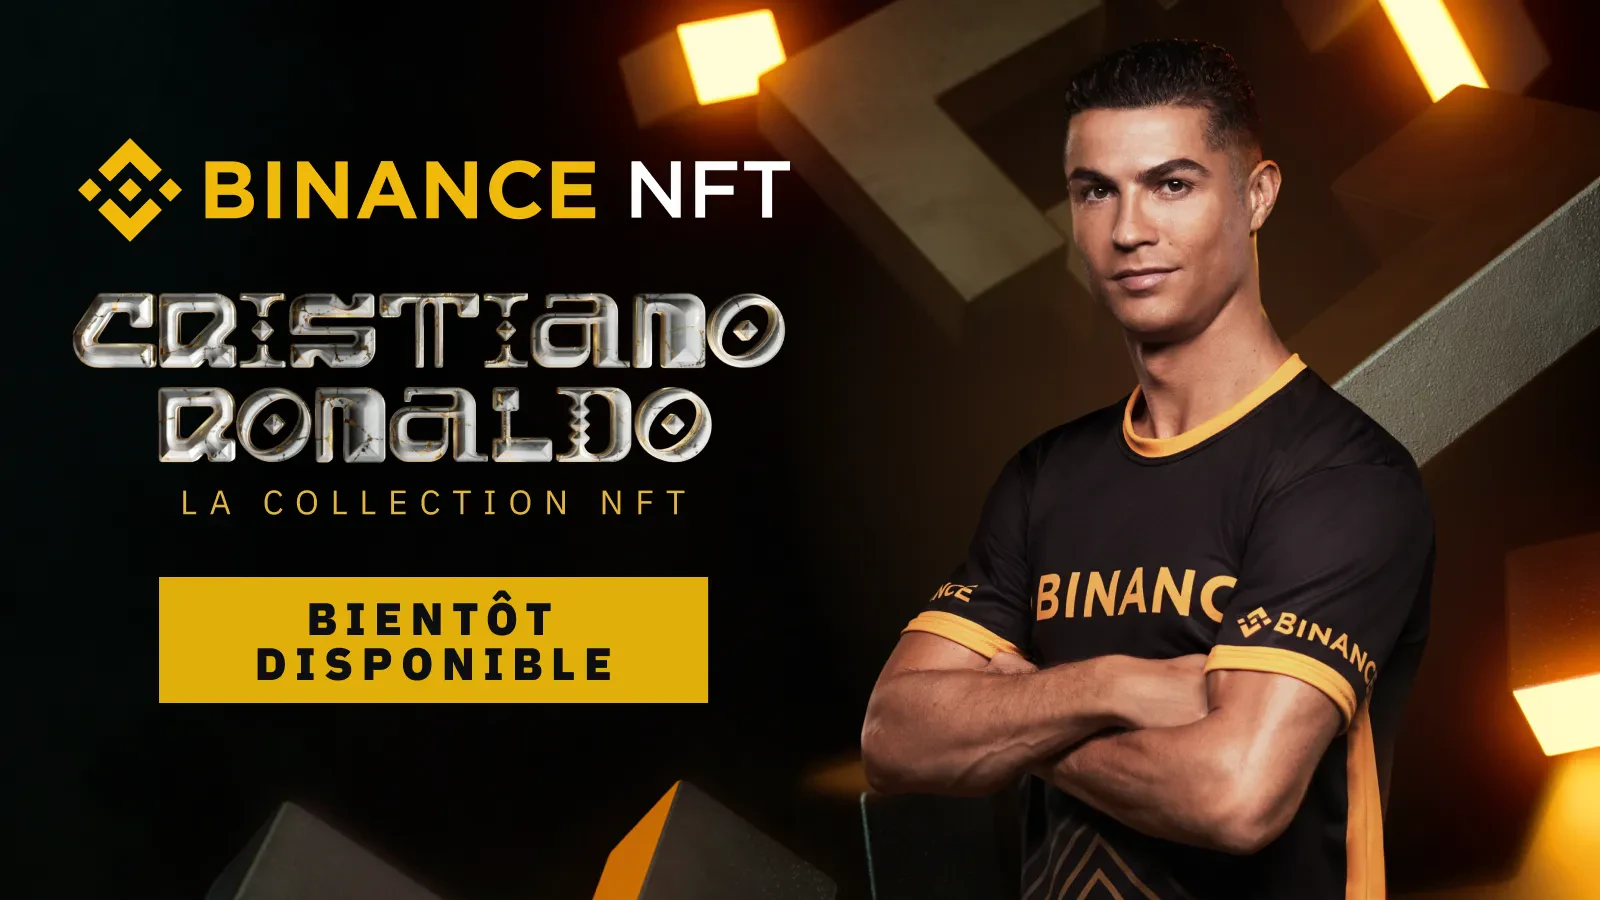 Ronaldo Binance collection NFT bientôt date disponible début